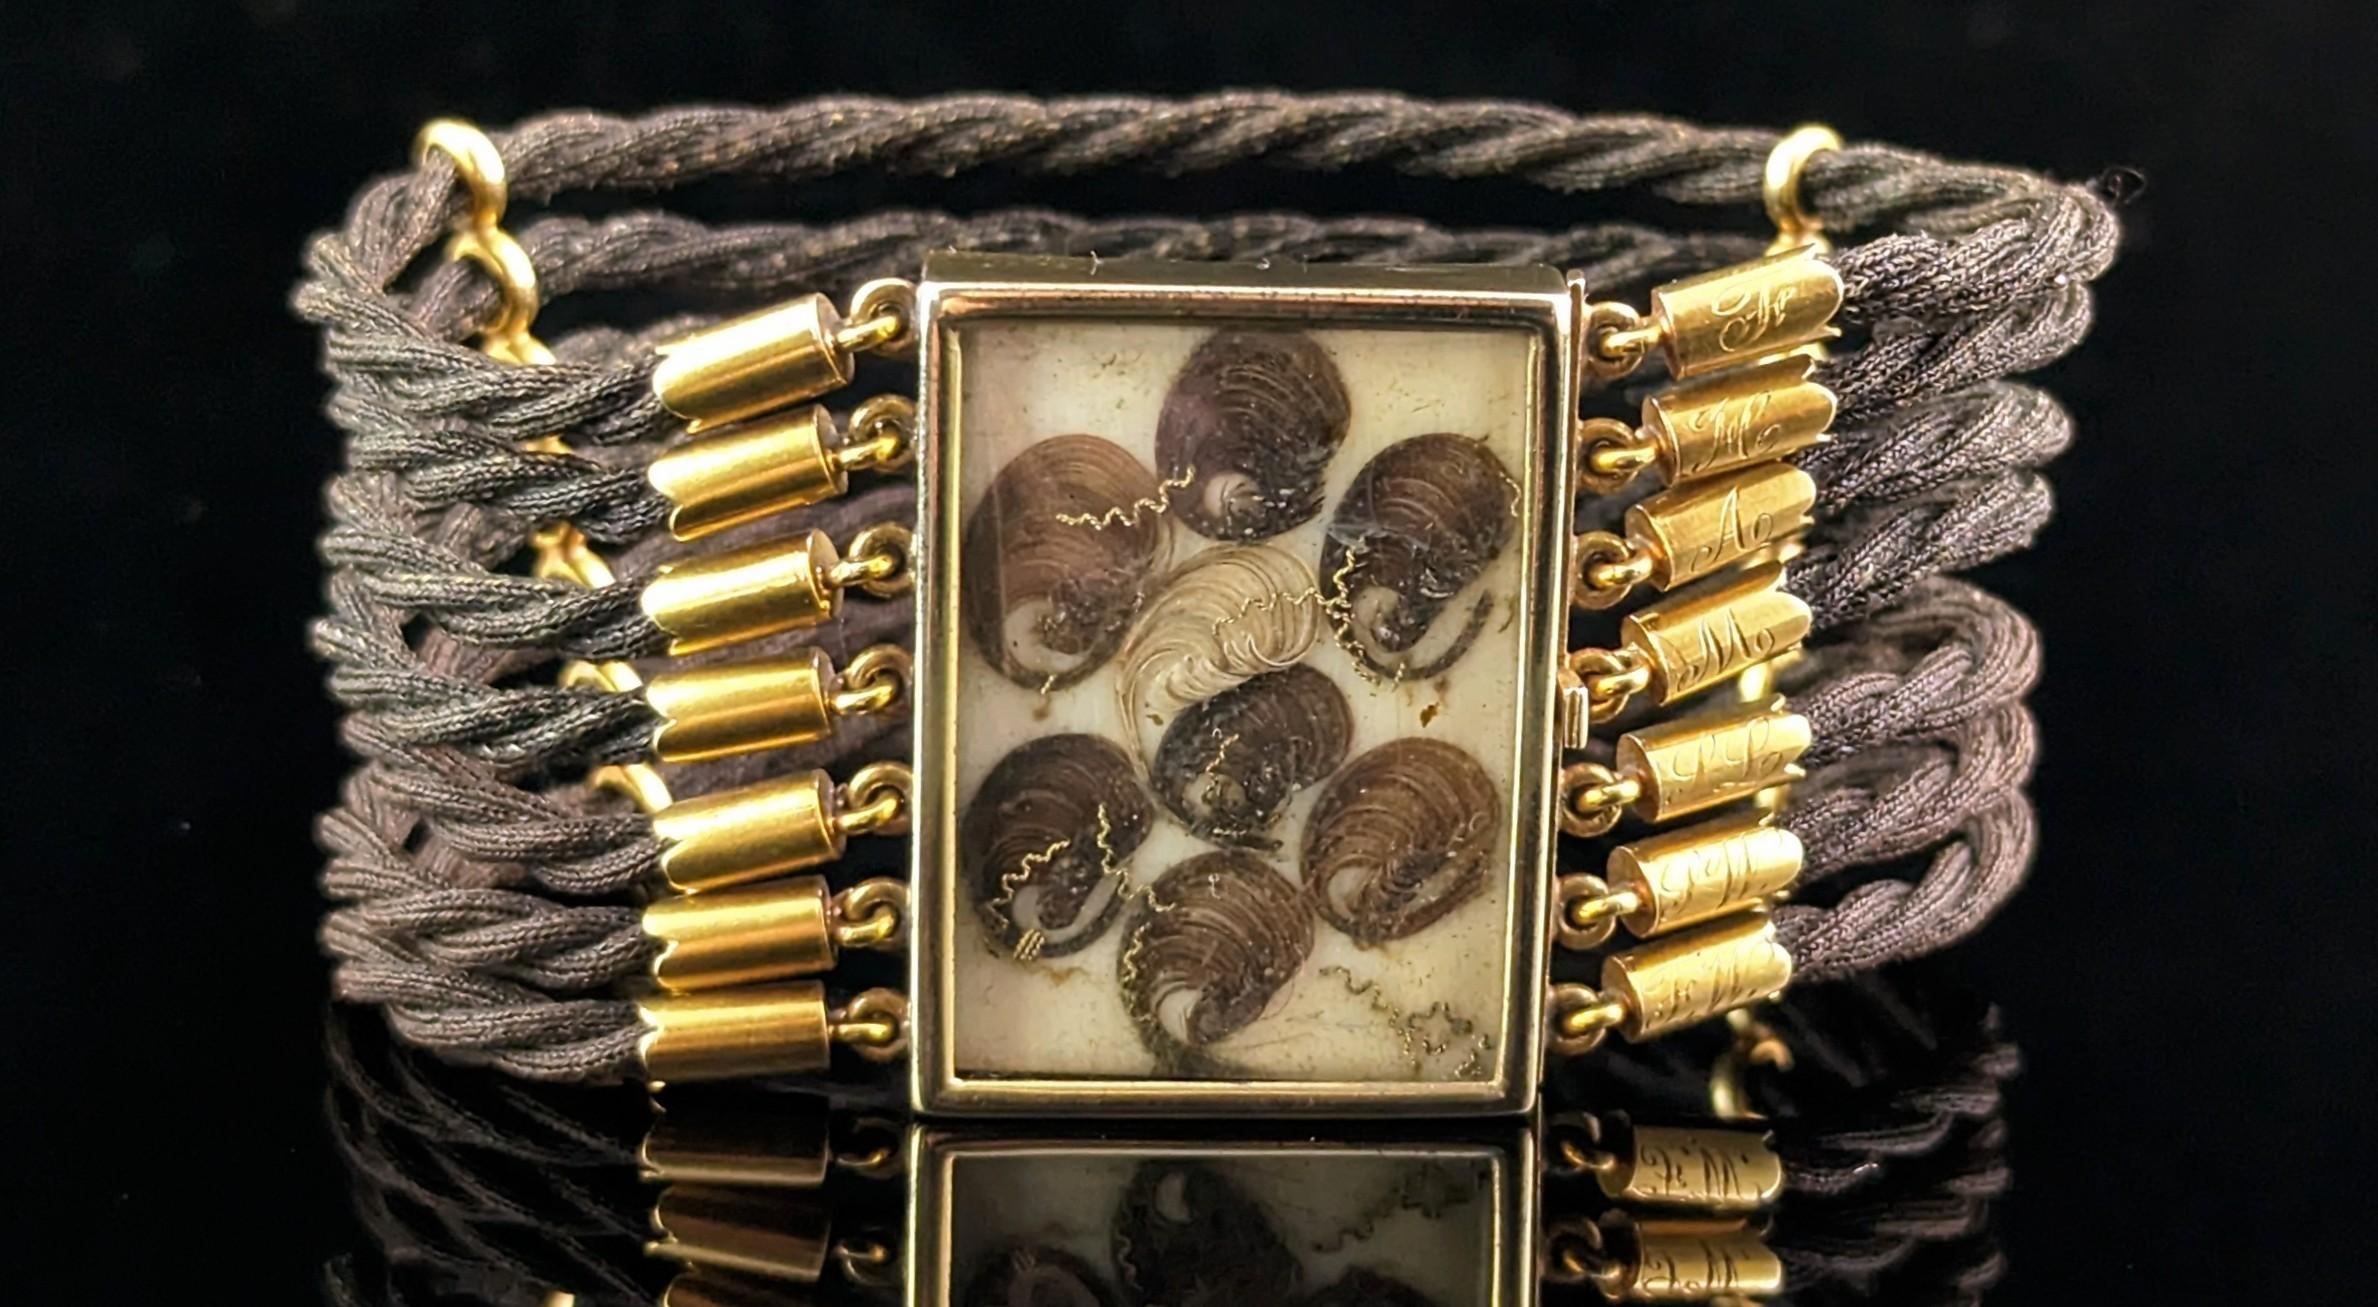 Dieses seltene antike Trauerarmband ist sicherlich ein interessantes und ungewöhnliches Stück, perfekt für den Sammler von Trauerschmuck.

Es handelt sich um ein klobiges, breites Armband im Stil einer Manschette, das aus dicht geflochtenen Strähnen